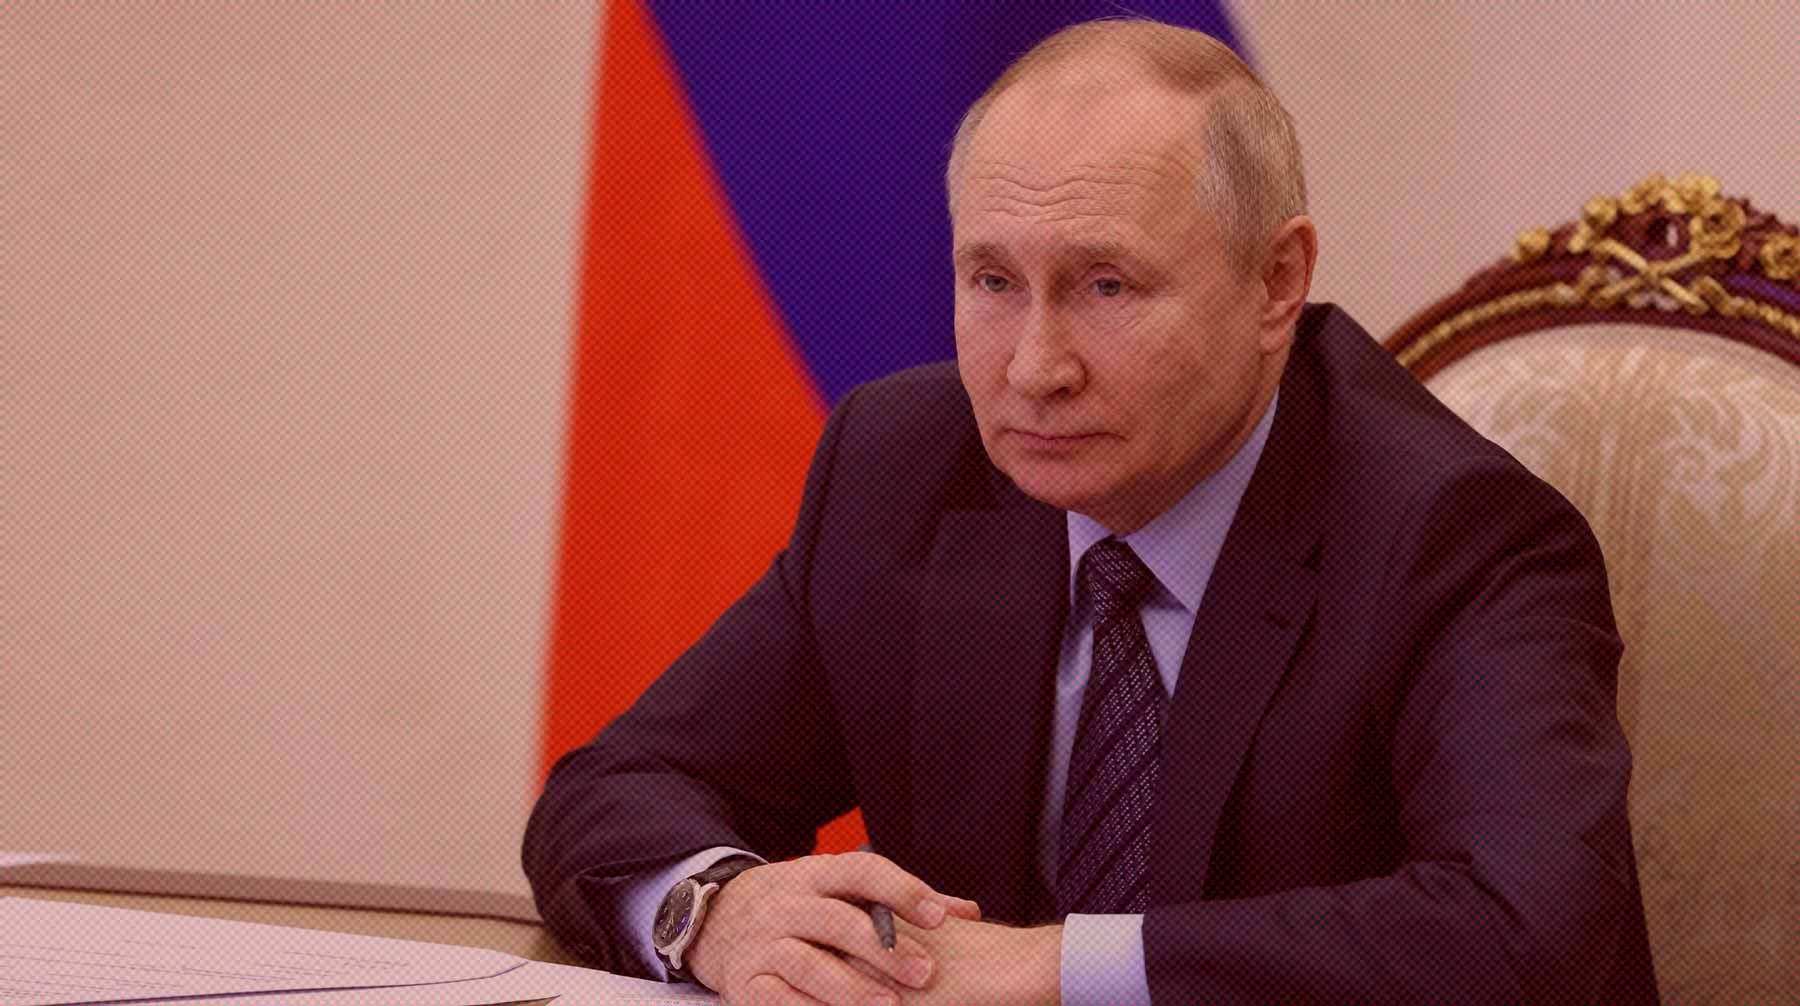 Dailystorm - Путин: Запад хочет уничтожить Россию, русский народ может расколоться на московитов и уральцев